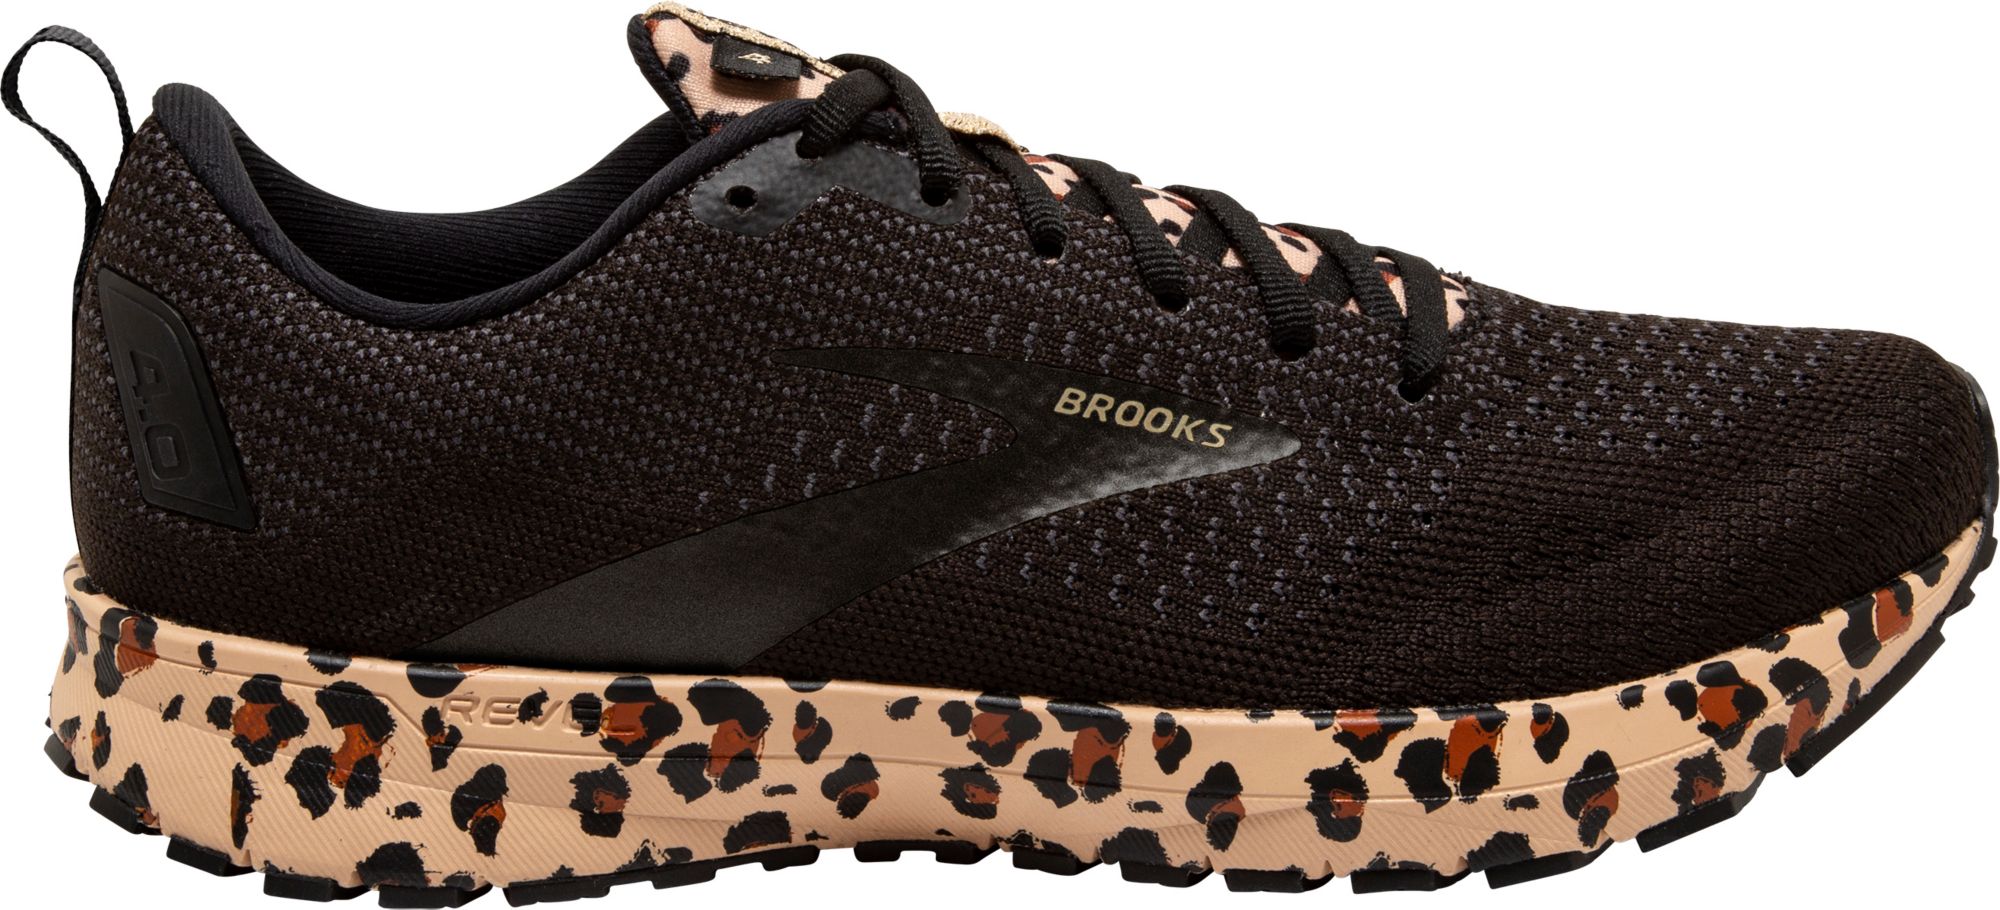 brooks sneakers womens brown